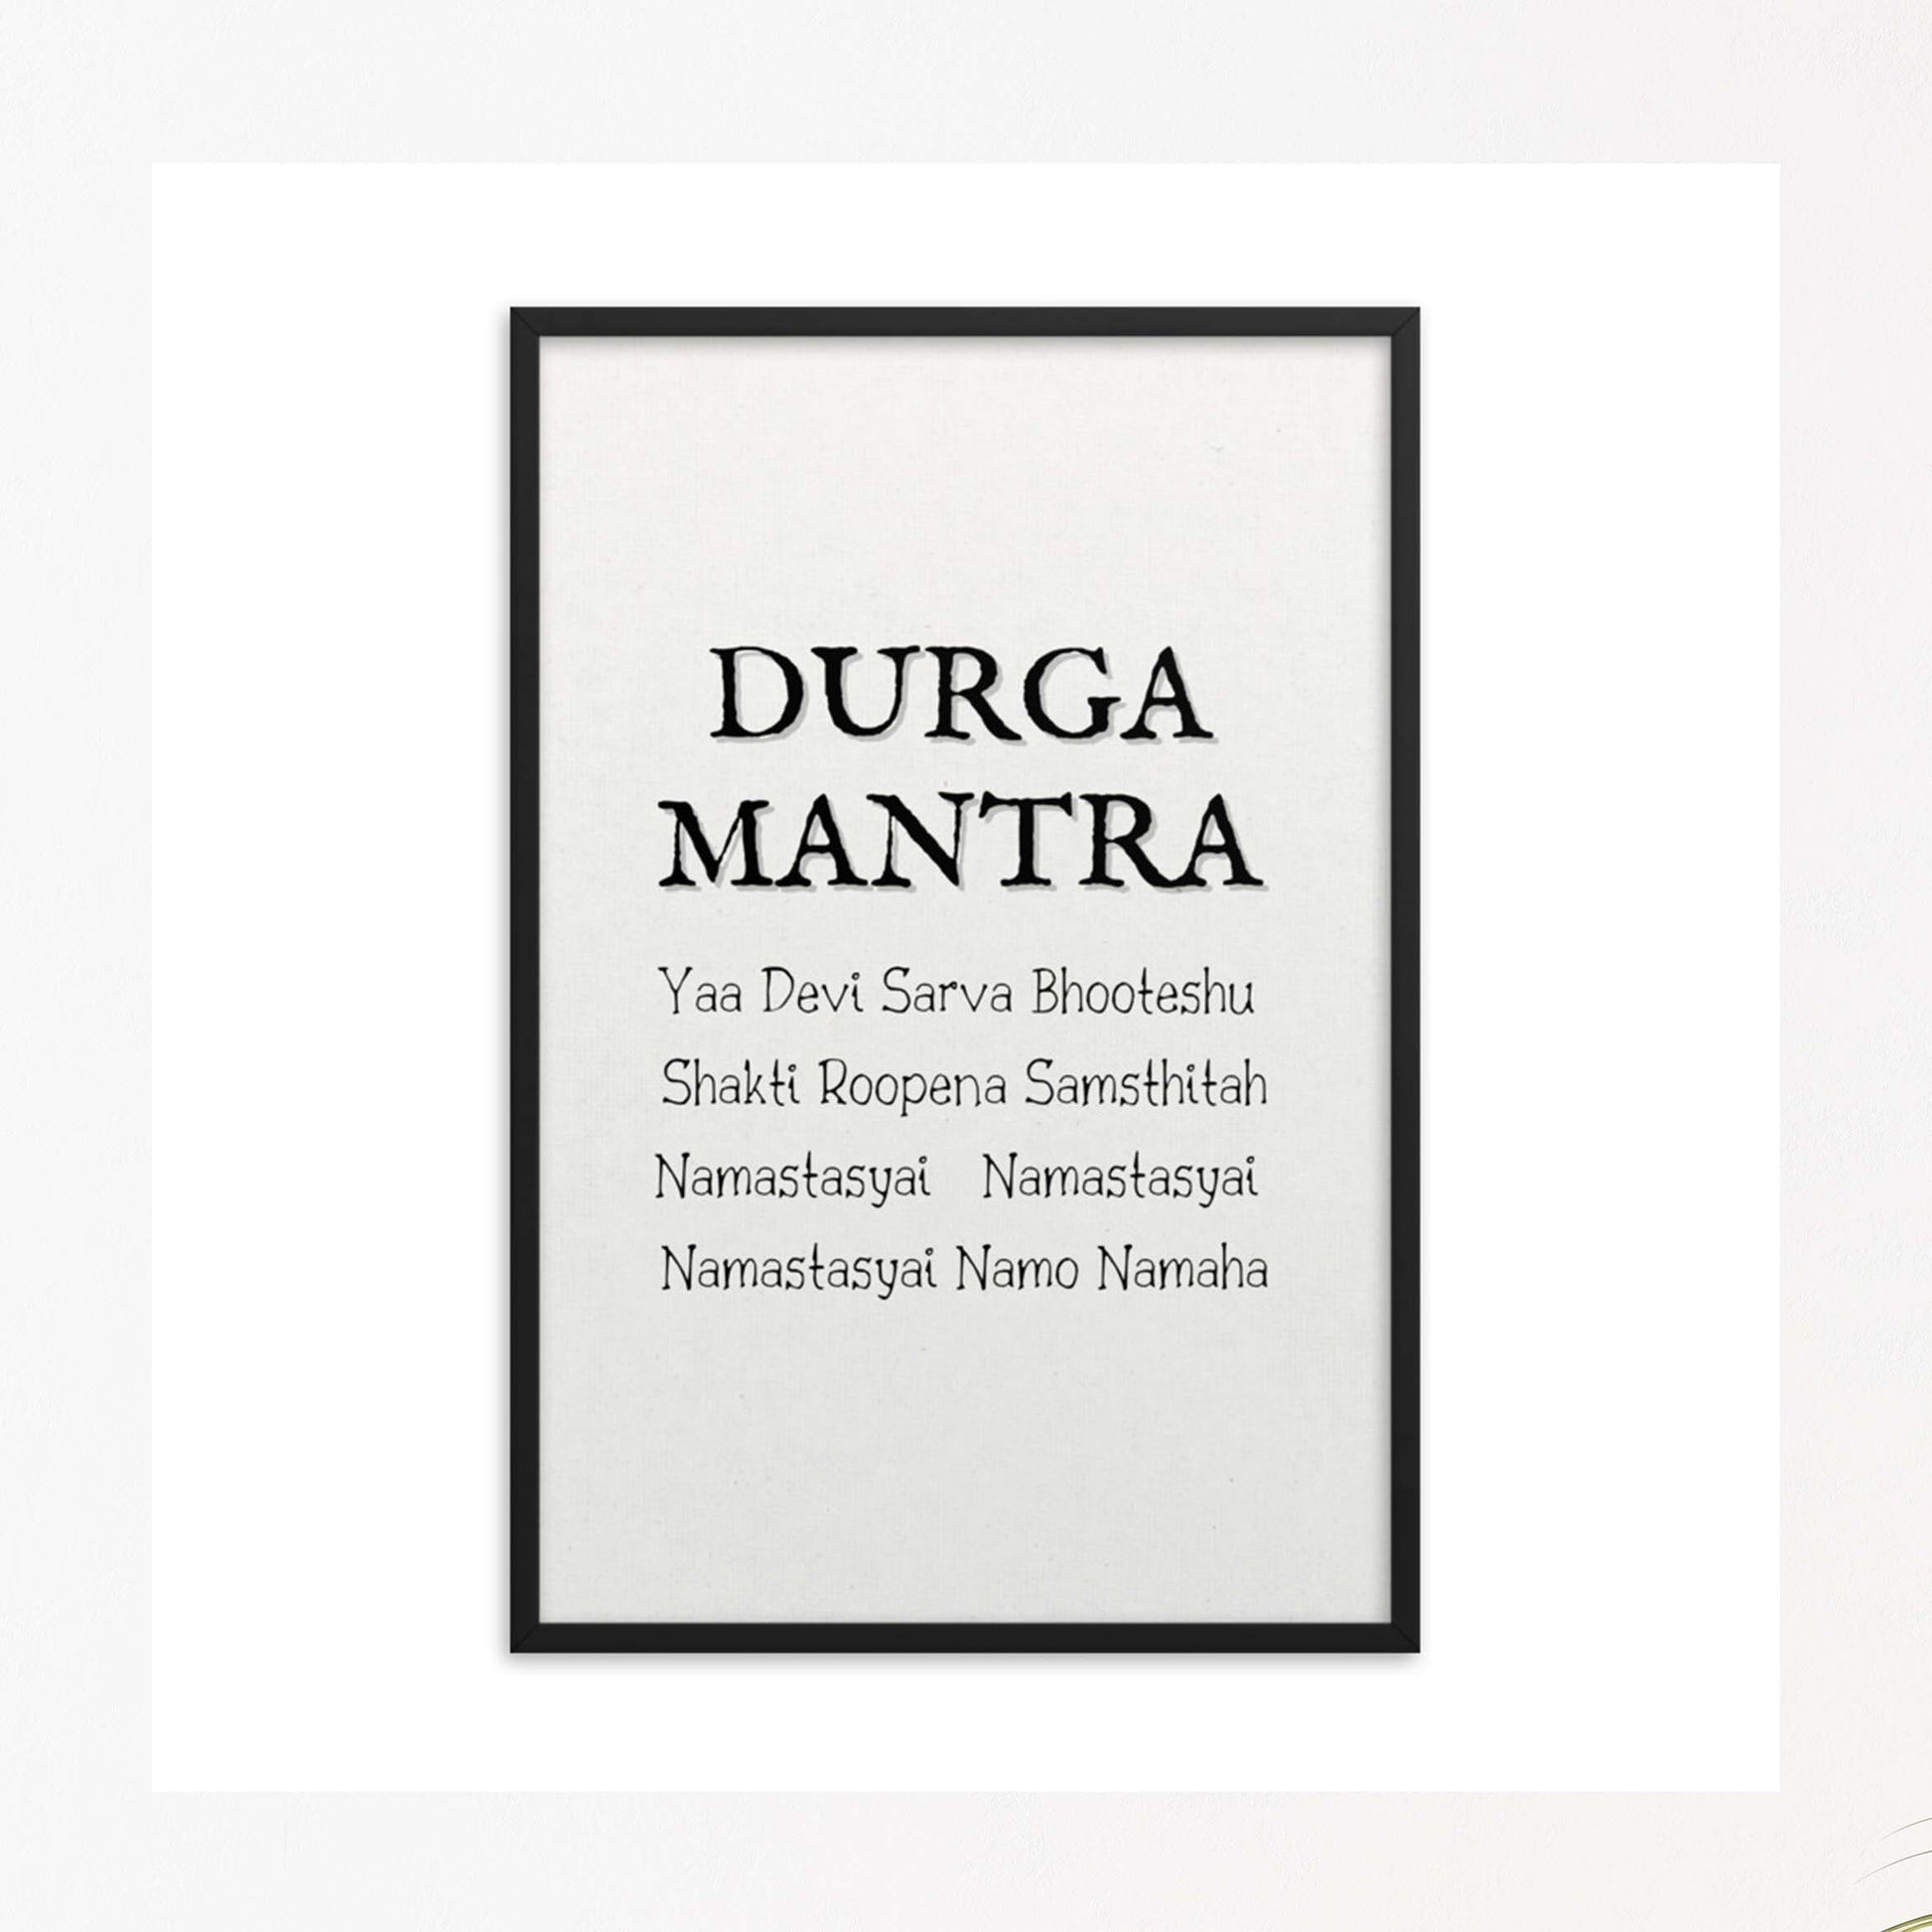 Durga Mantra black on white minimalist framed poster